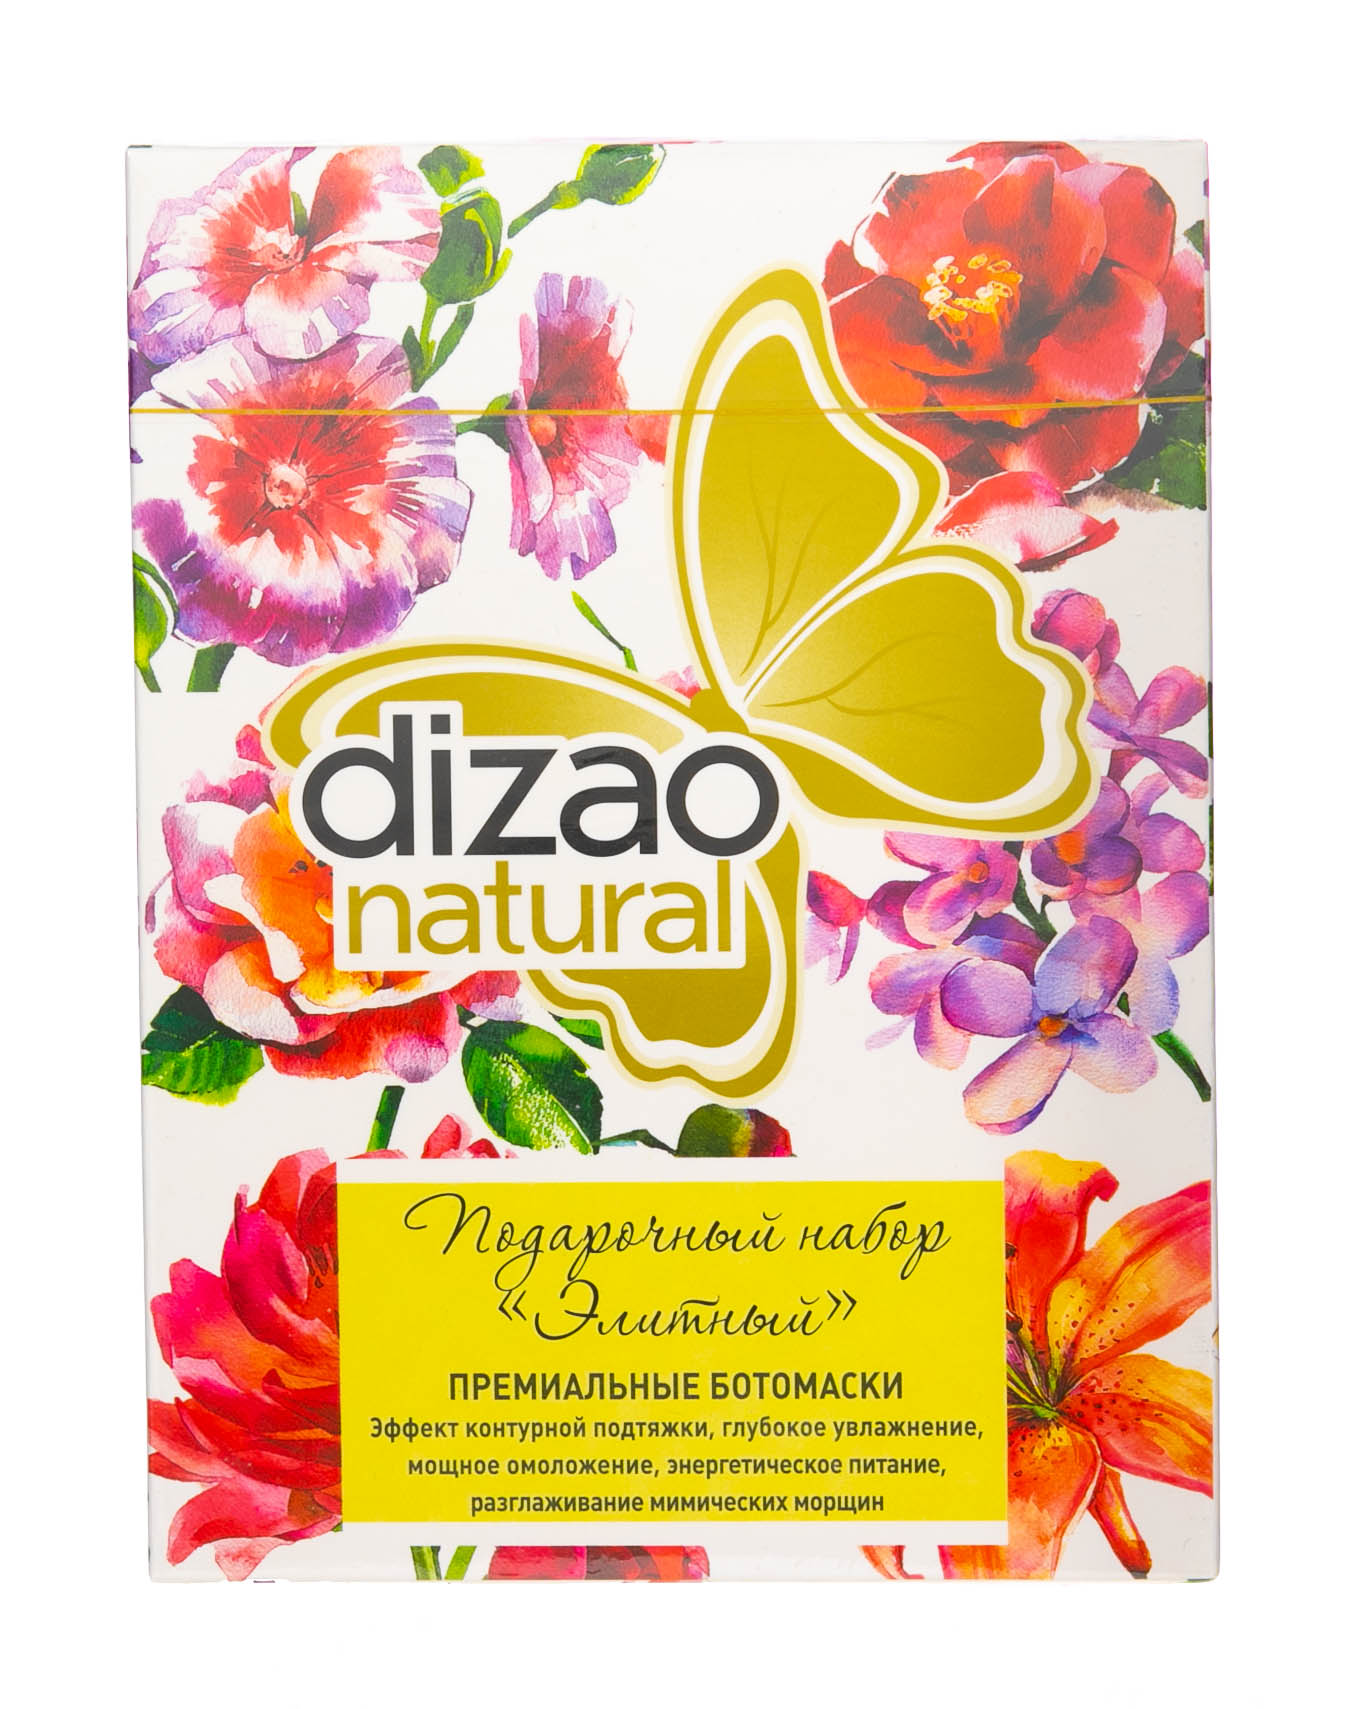 Набор масок 1. Dizao маски подарочный набор. Дизао набор удача. Dizao подарочный набор масок для лица. Dizao подарочный набор премиальных ботомасок элитный, упаковка (6 саше).